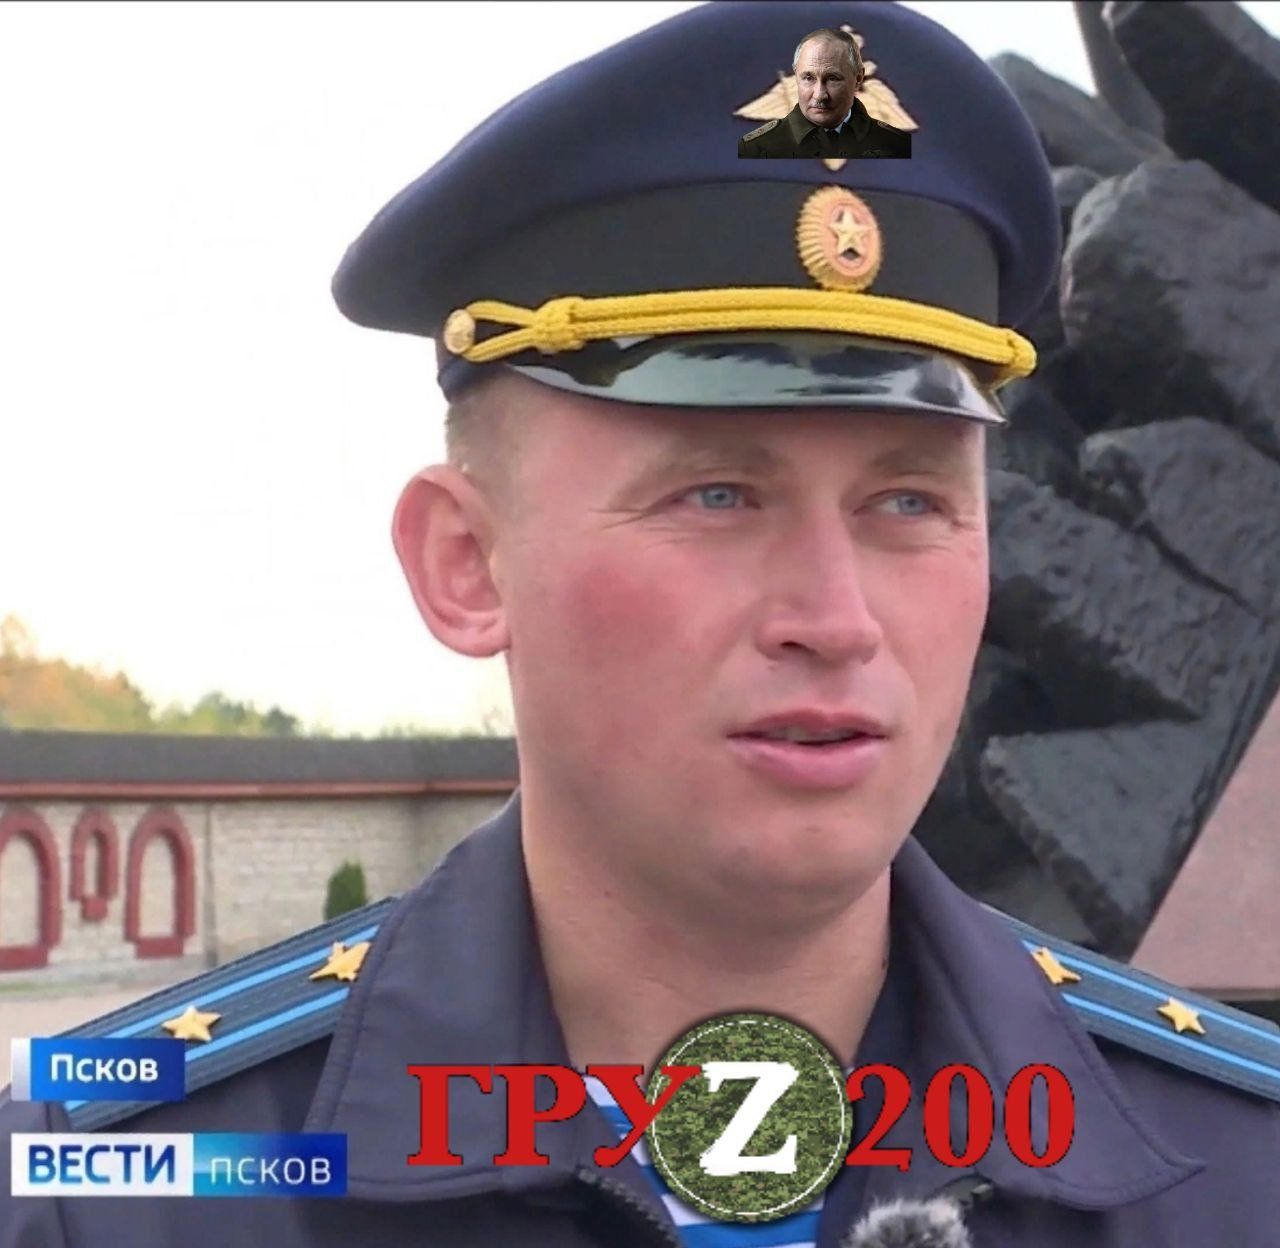 Російський підполковник Олександр Досягаєв був ліквідований Збройними силами України.